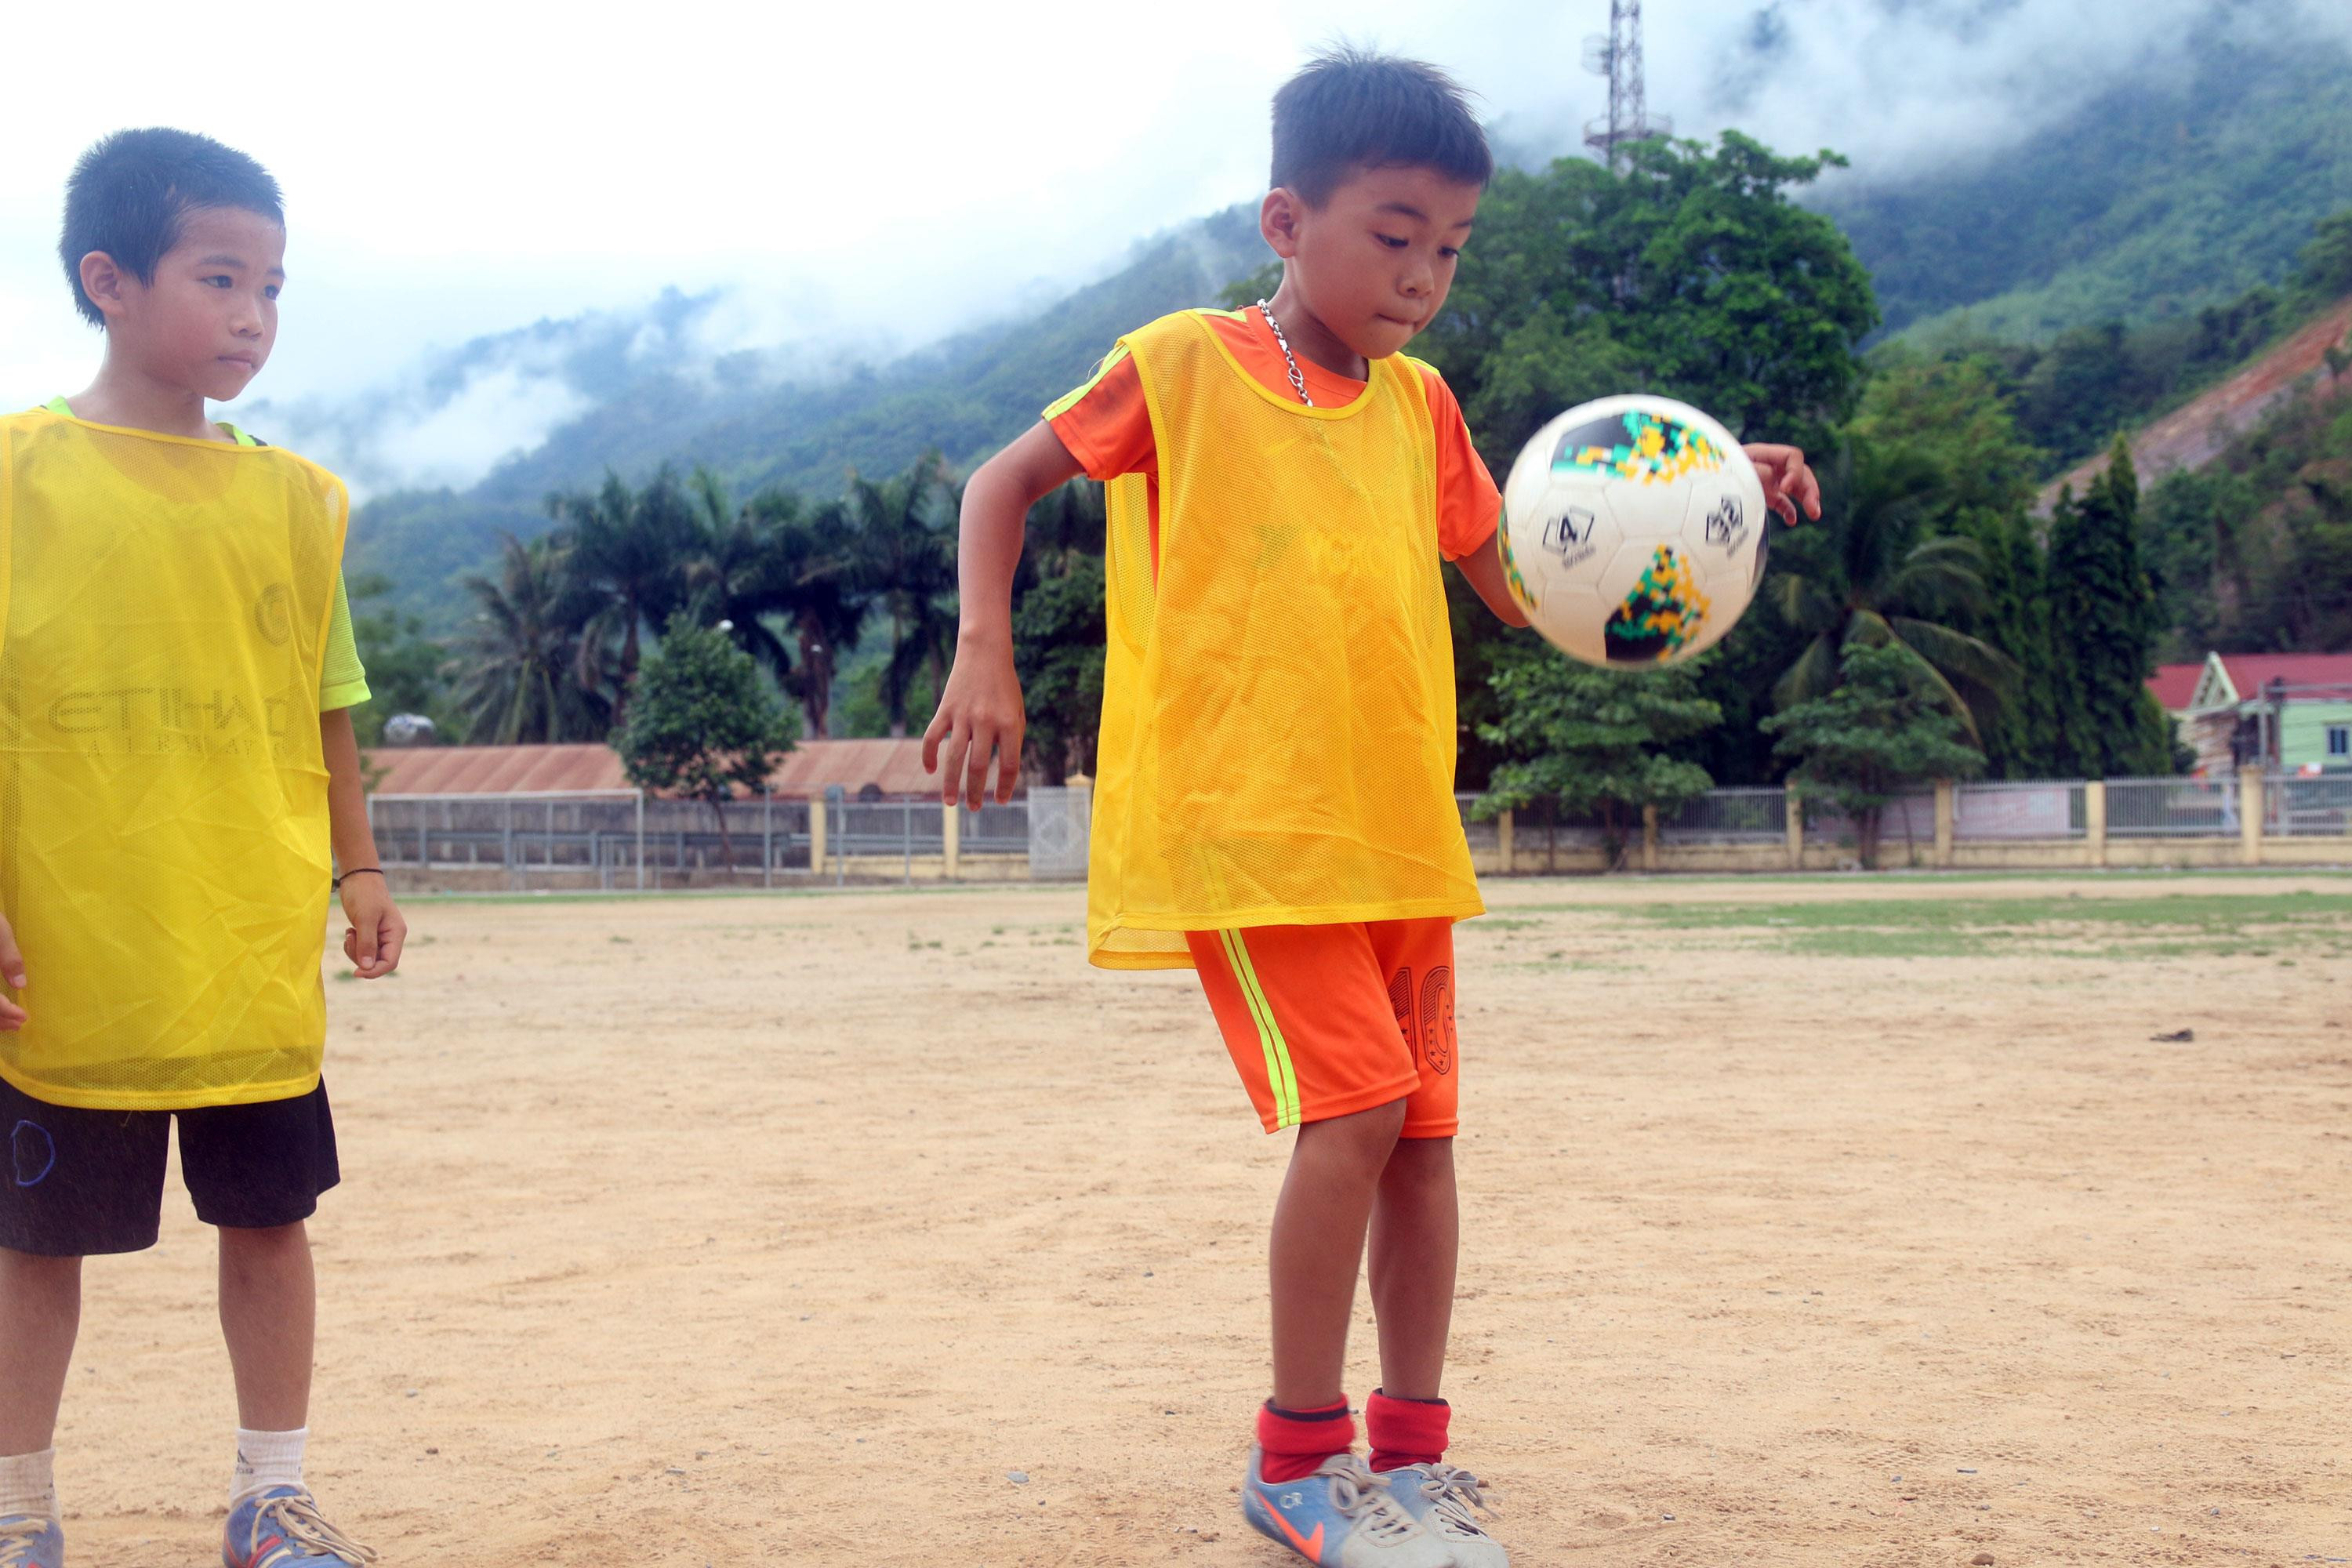 Ước mơ của các cầu thủ nhí này là được vào lò đào tạo trẻ của Sông Lam Nghệ An. Ảnh: Đào Thọ